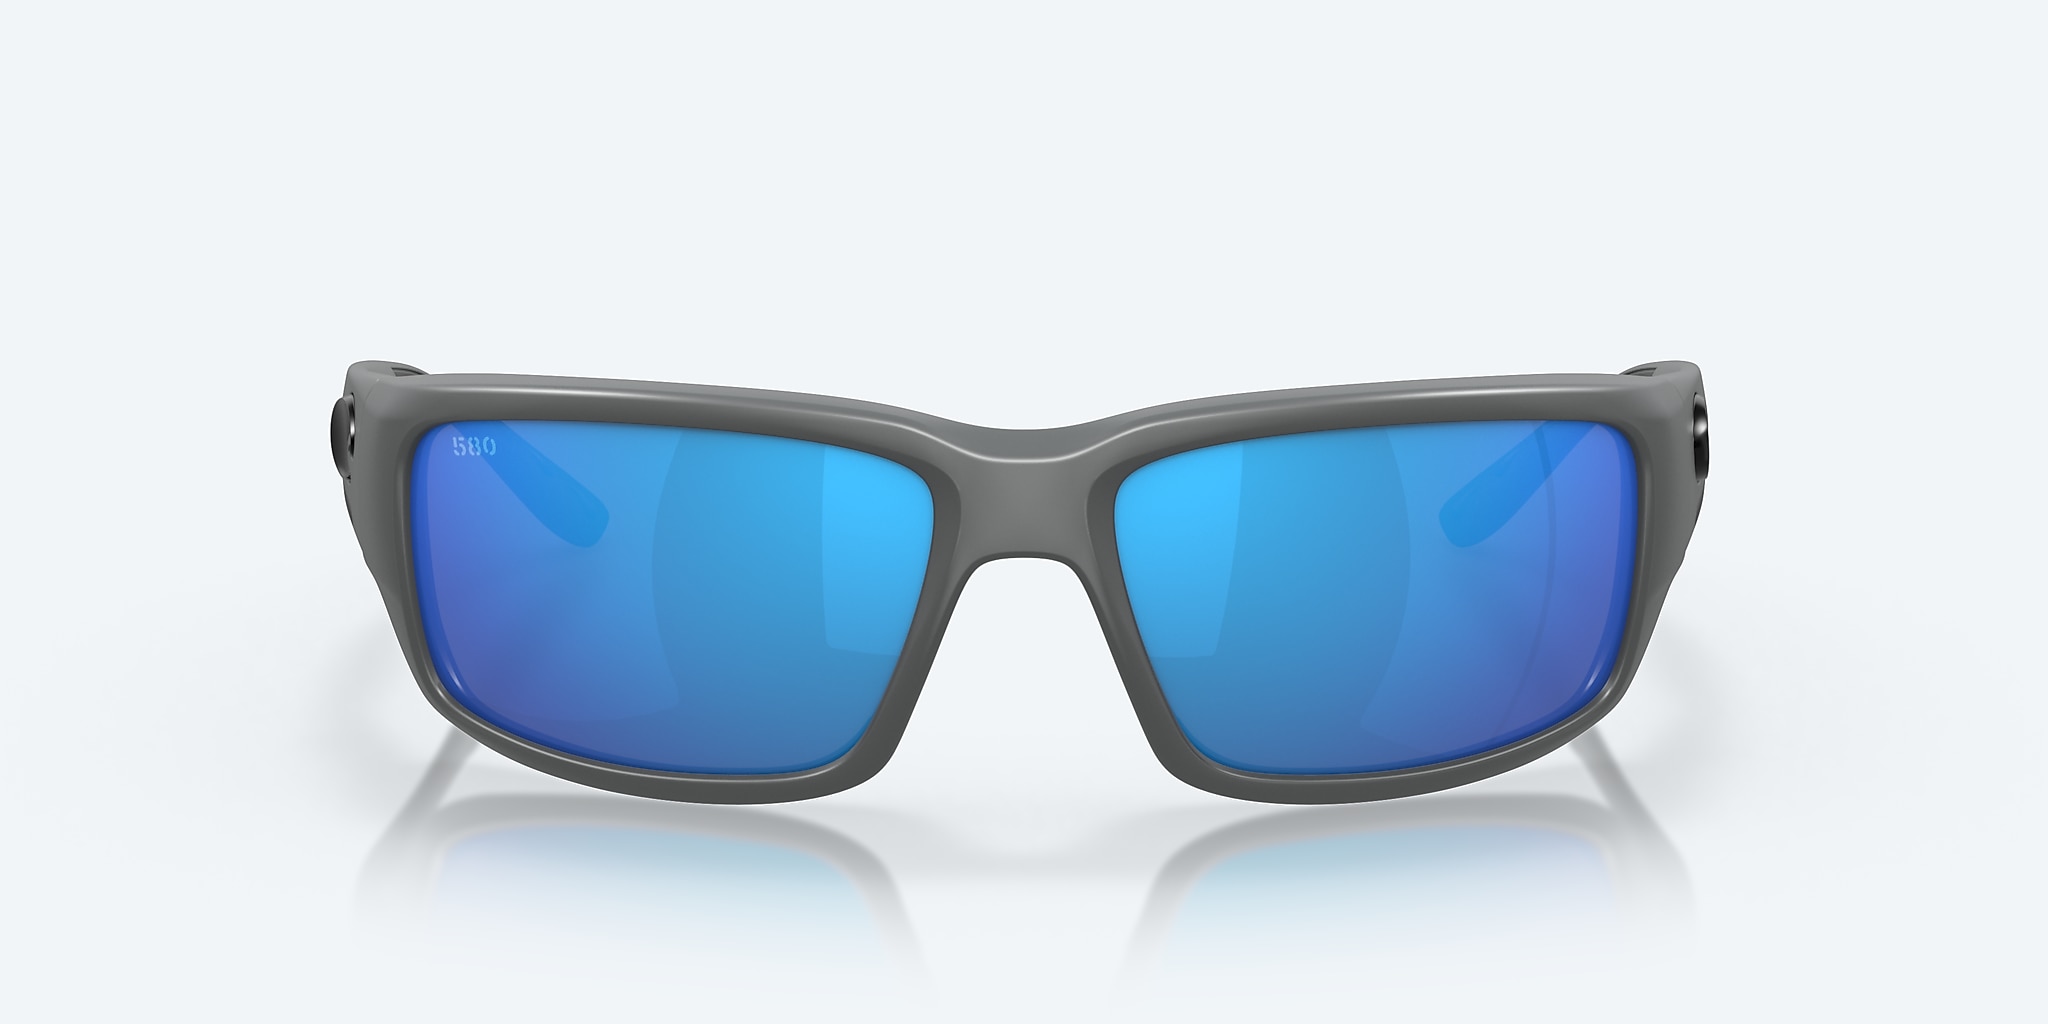 Fantail Polarized Sunglasses in Costa | Del Mar® Blue Mirror